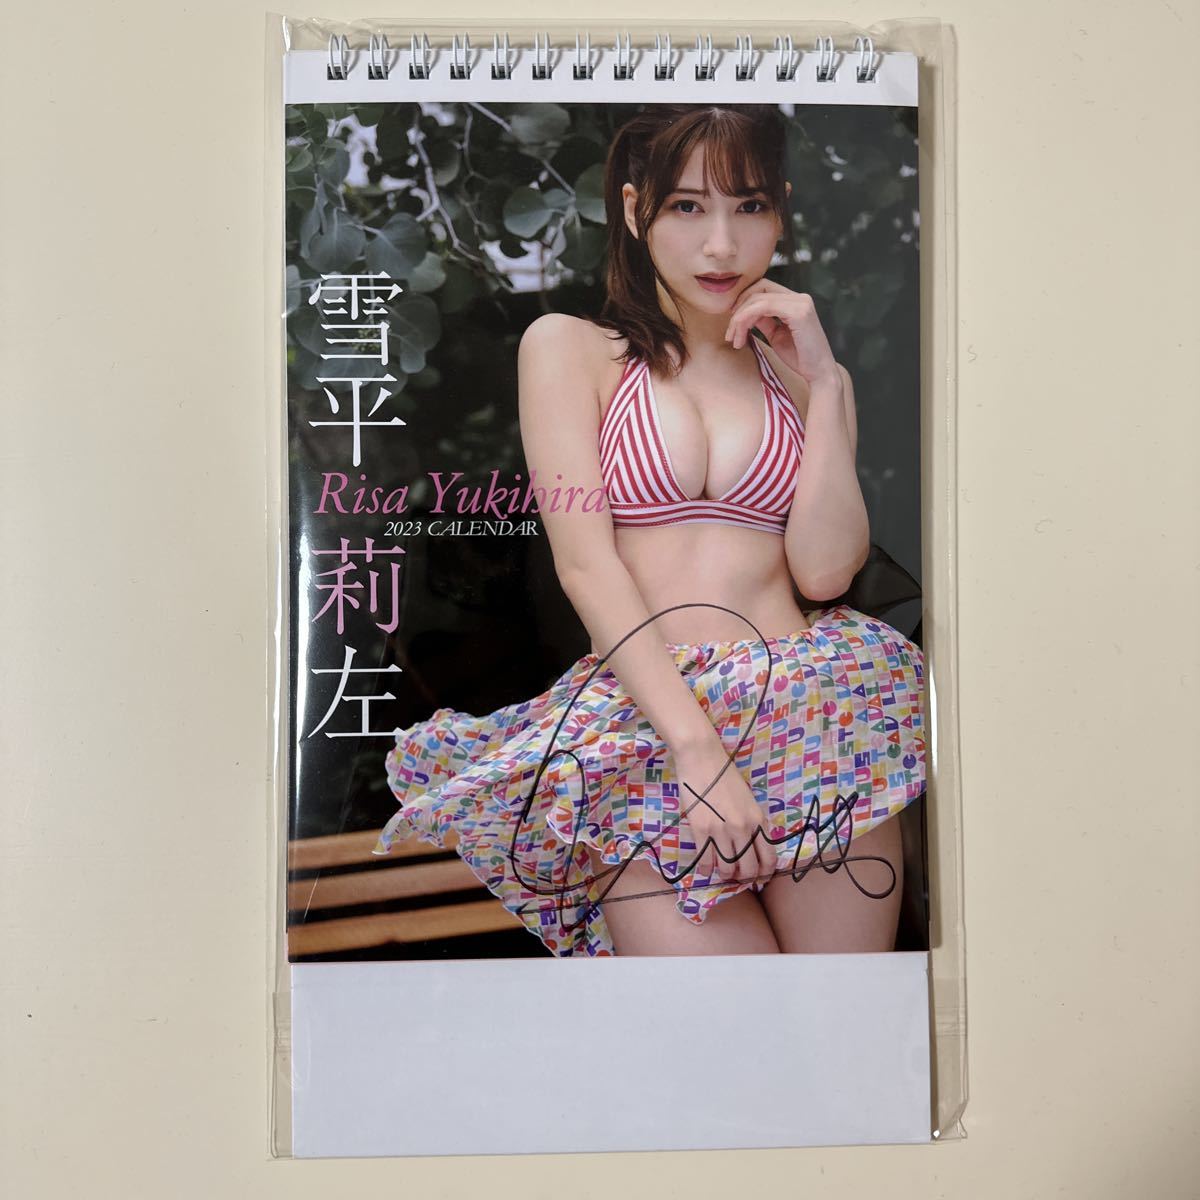  Yukihira . левый автограф настольный календарь 2023